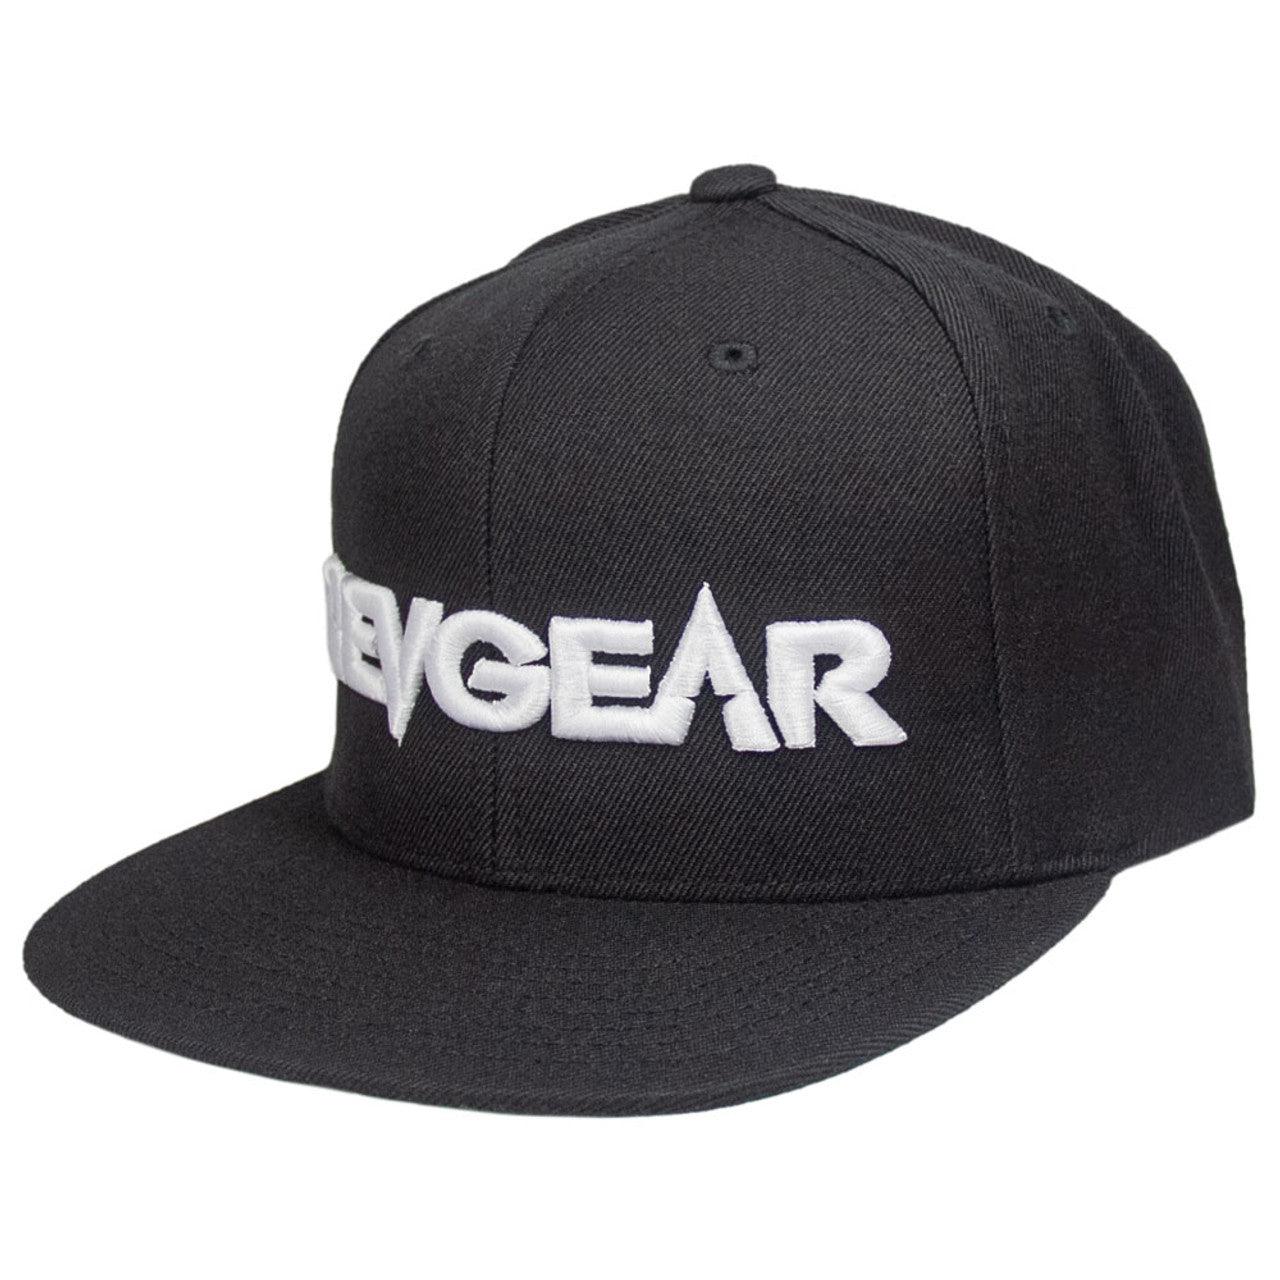 3D Revgear Premium Snapback Hat - Black - Violent Art Shop